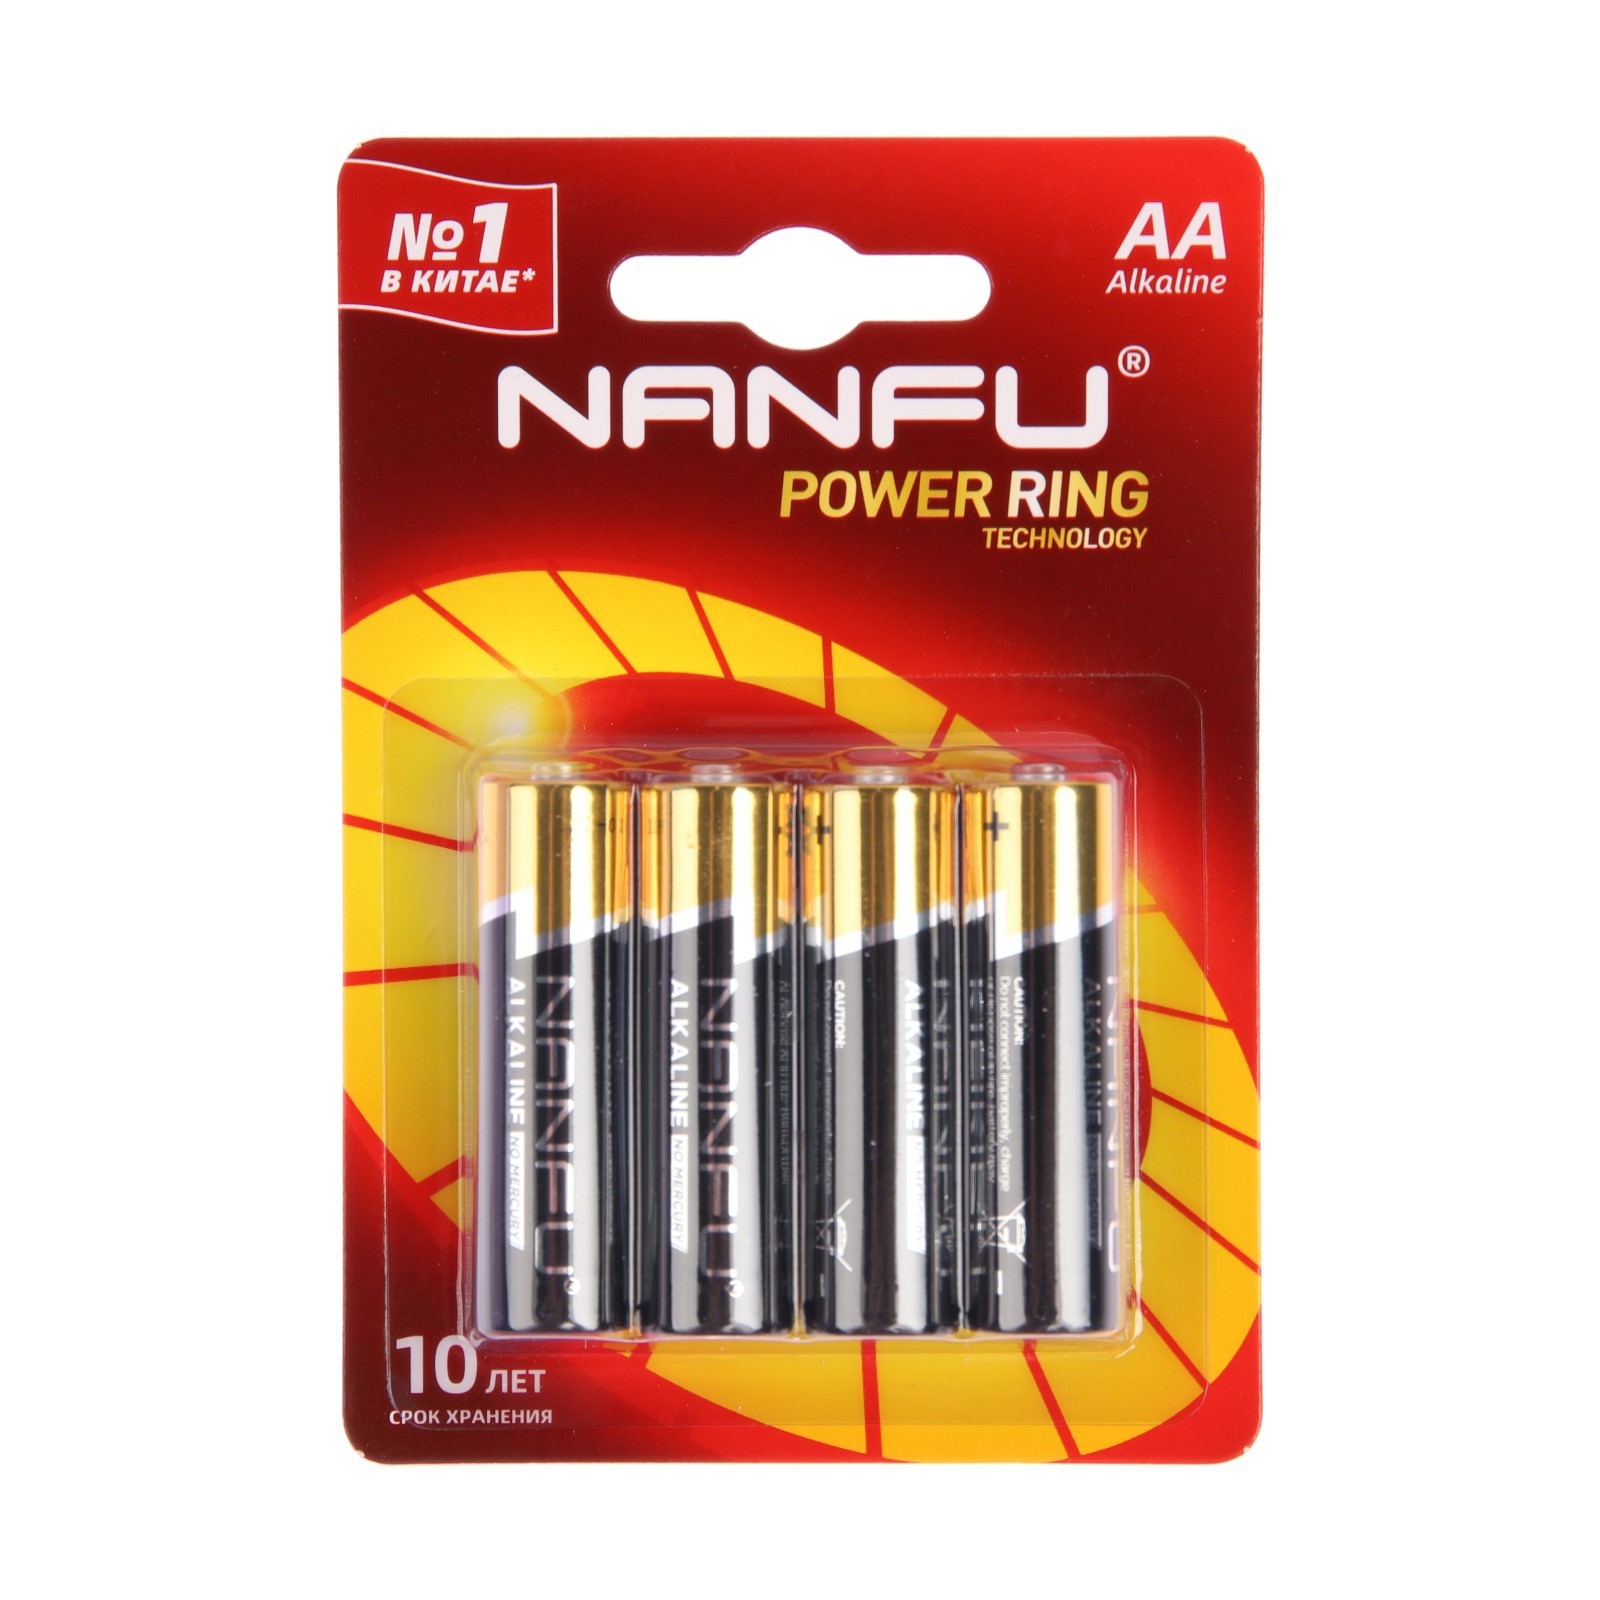 Батарейка алкалиновая Nanfu AA 9905028 алкалиновая LR6-4BL 1.5В блистер 4 шт. батарейка облик a27 l828 lr27 alkaline алкалиновая 12 в блистер 5 шт